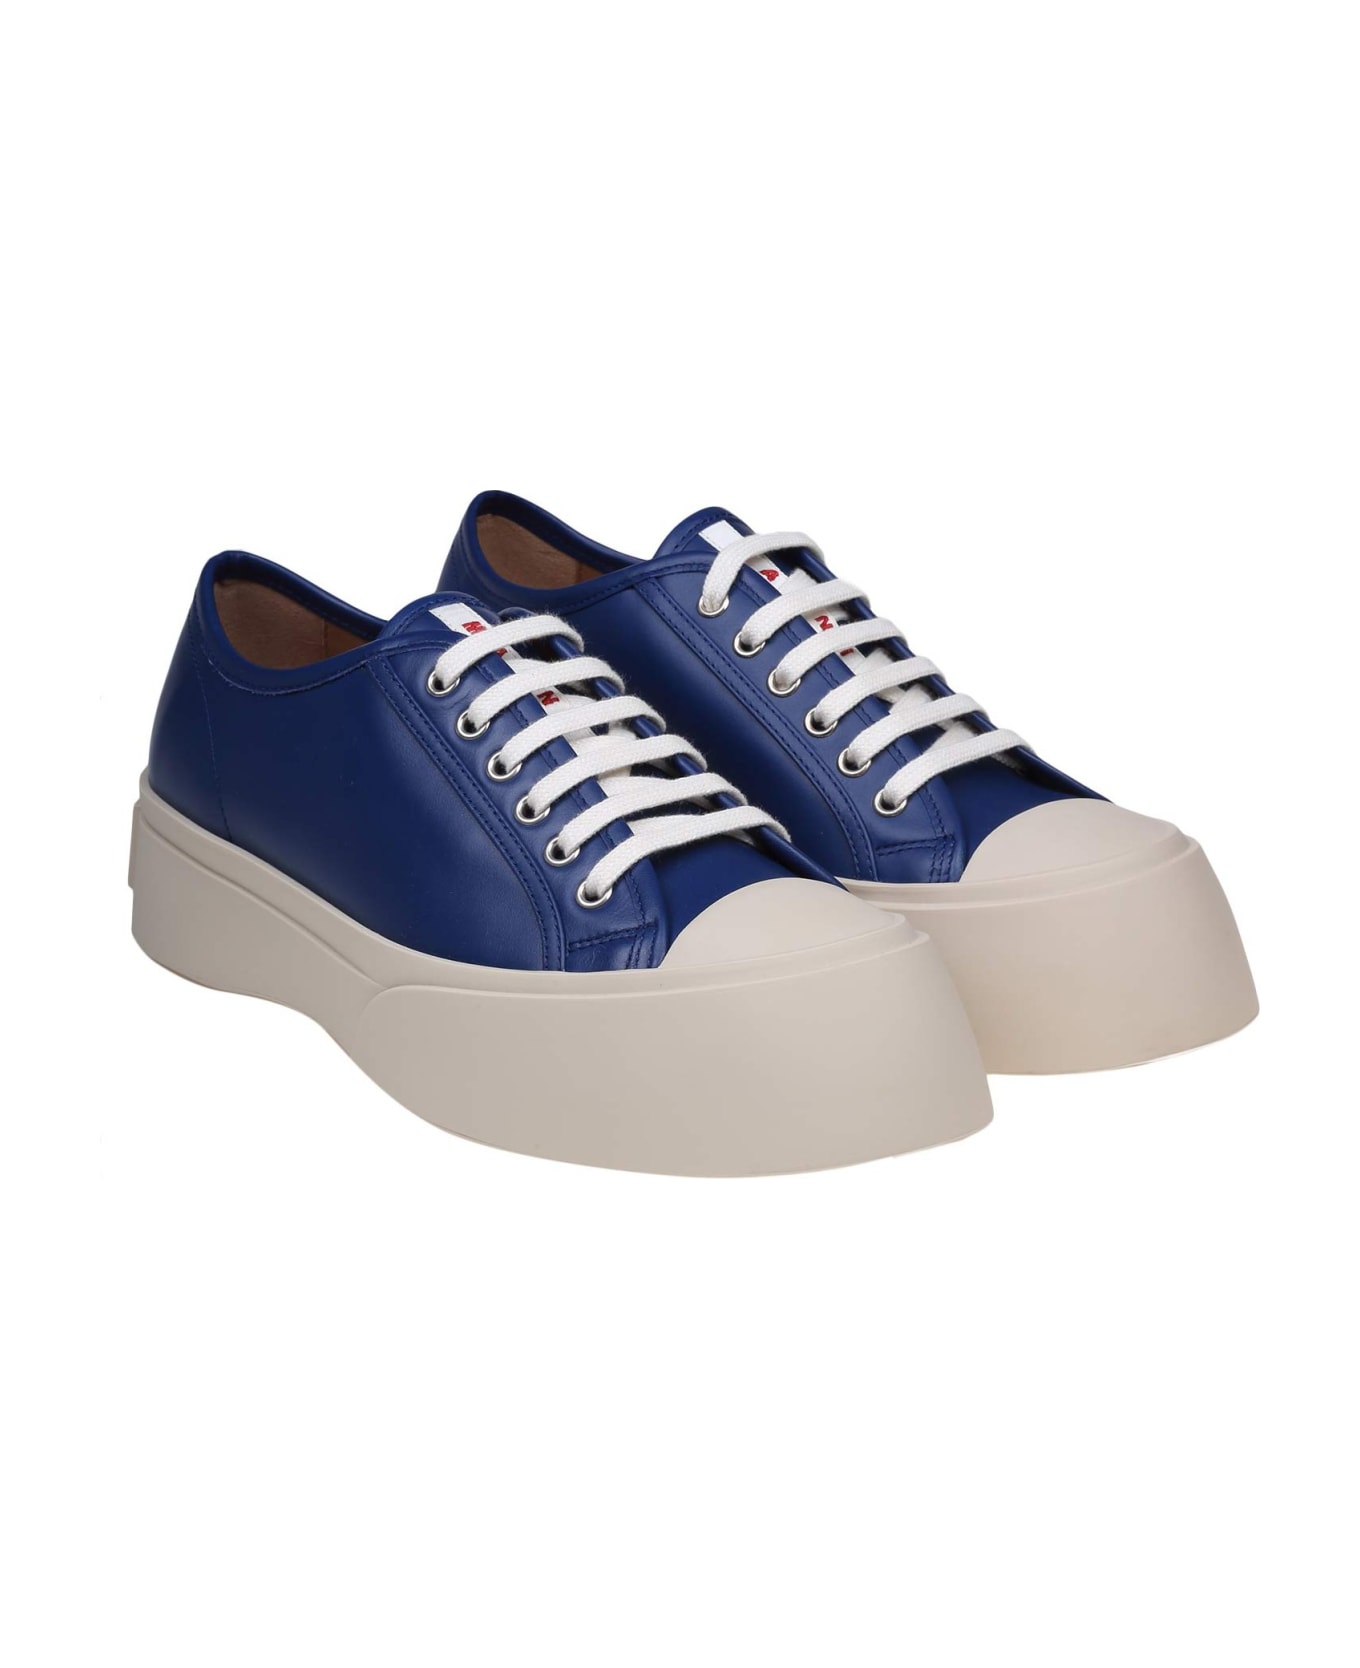 Marni Pablo Sneakers In Blue Nappa - BLUE